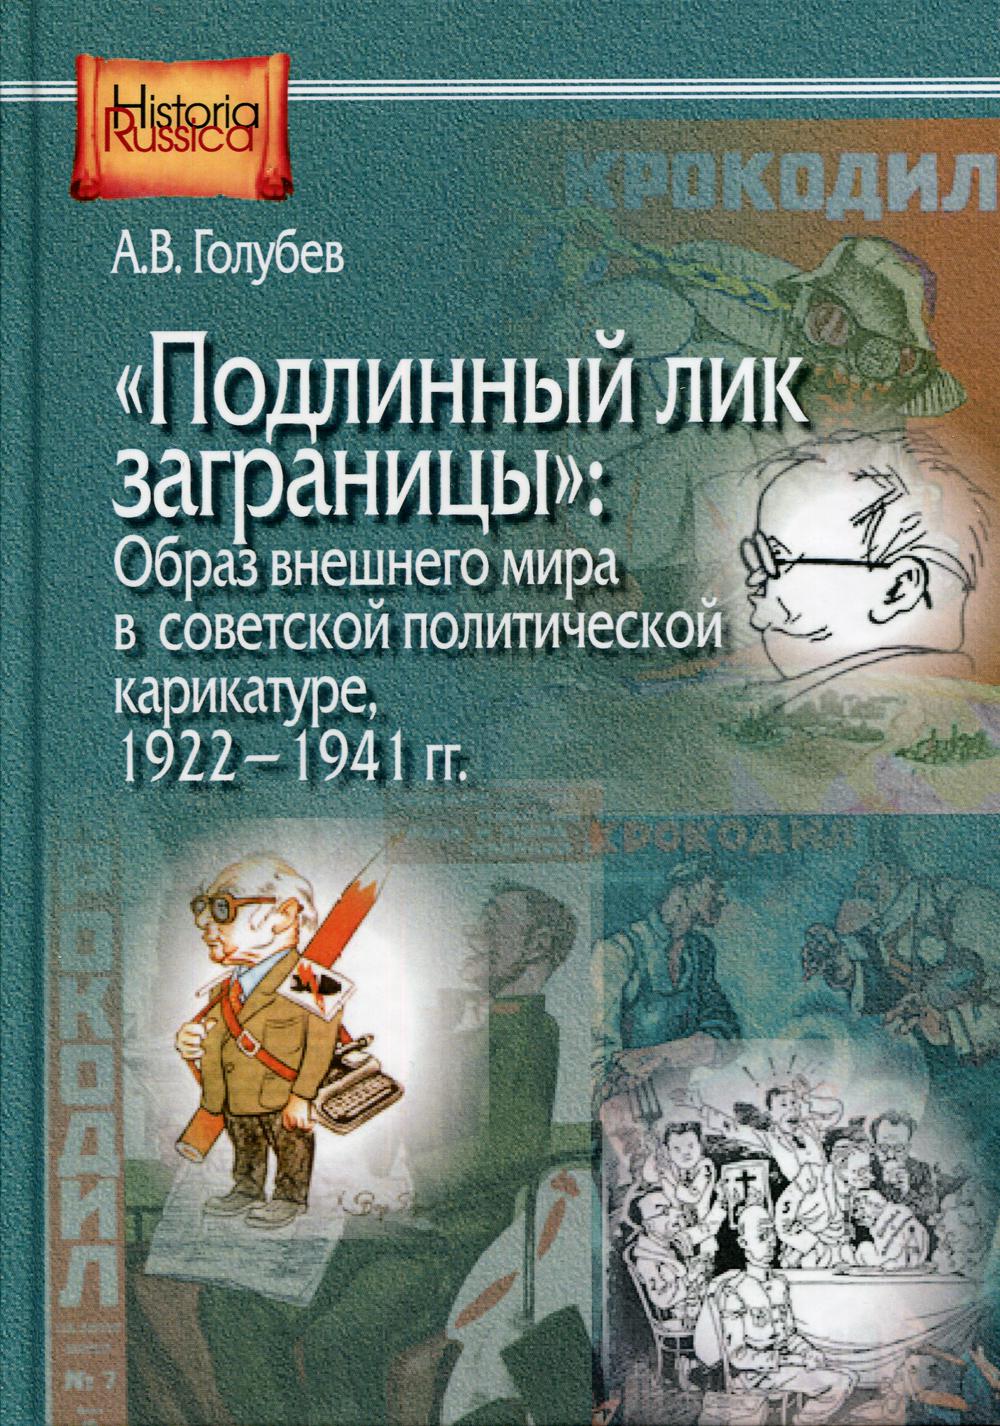 Подлинный лик заграницы - образ внешнего мира в советской политической карикатуре. 1922-1941 гг.